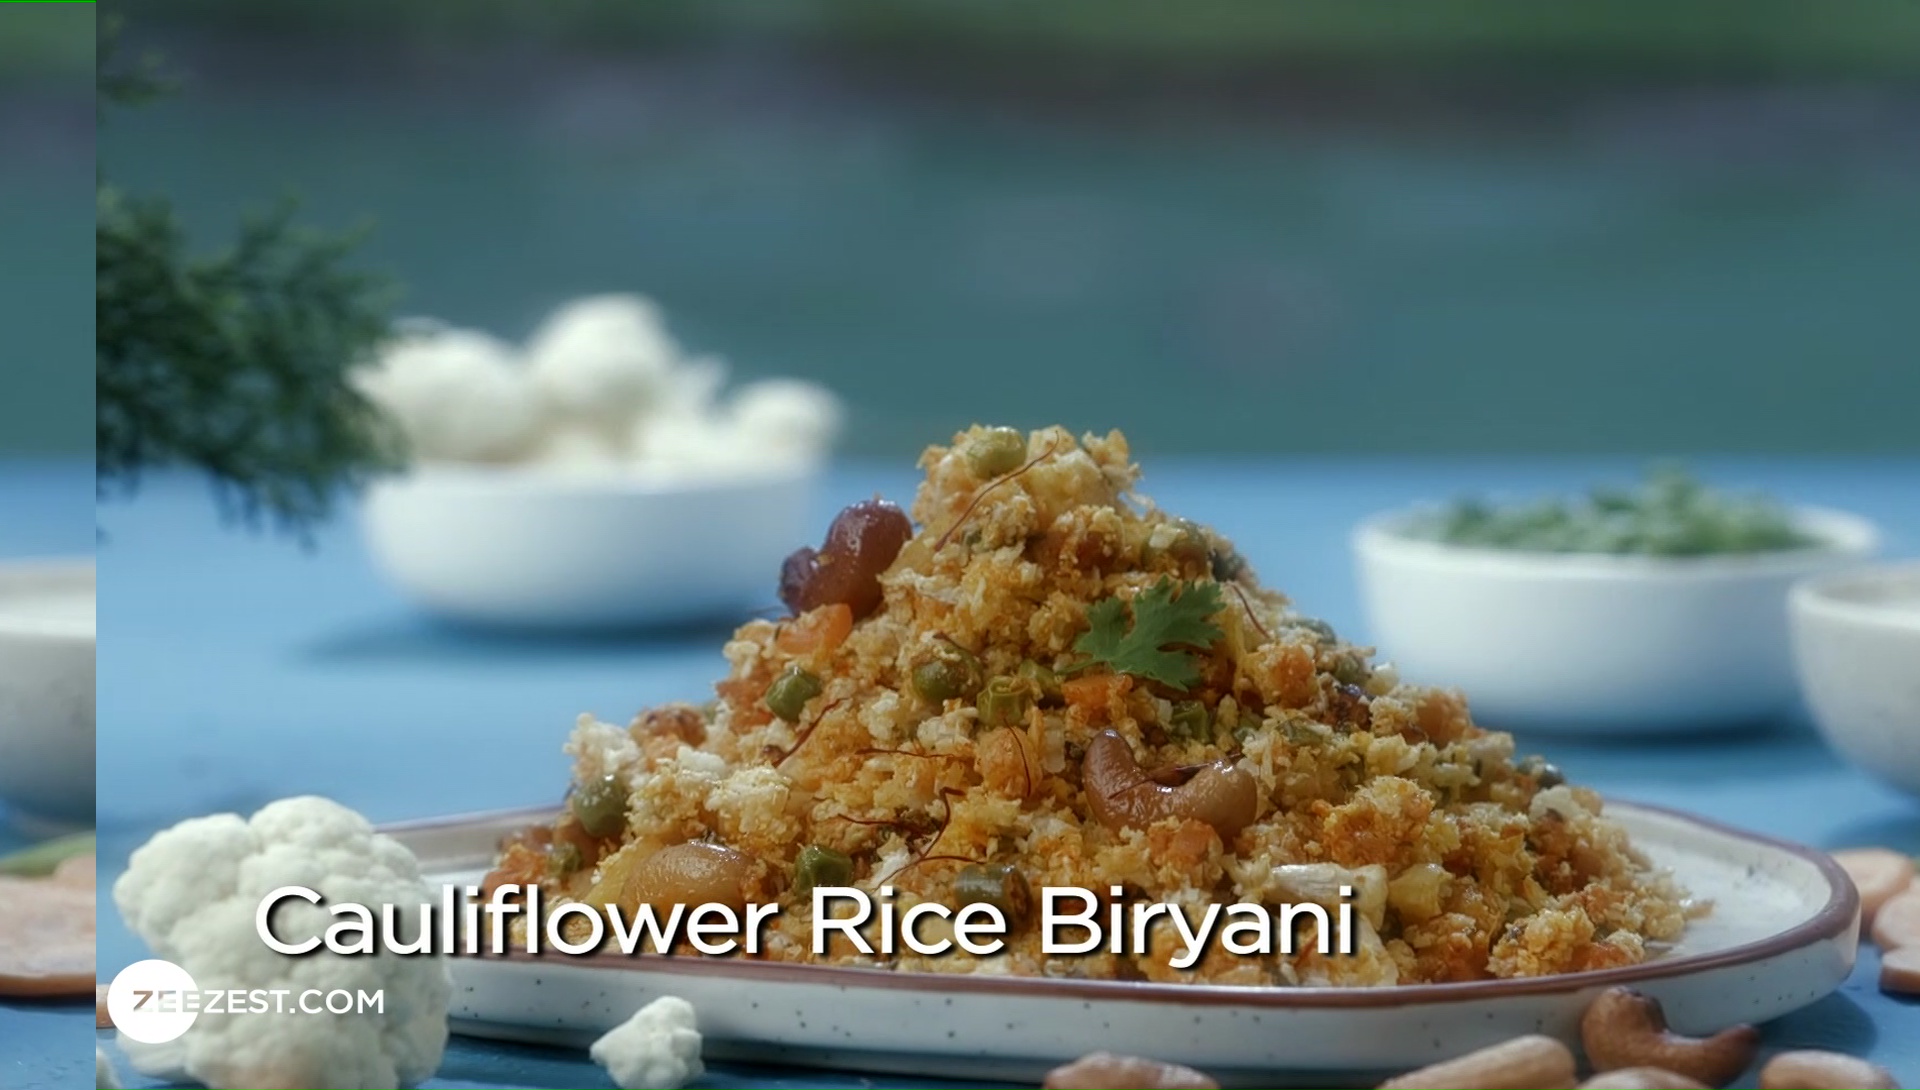 Cauliflower Rice Biryani